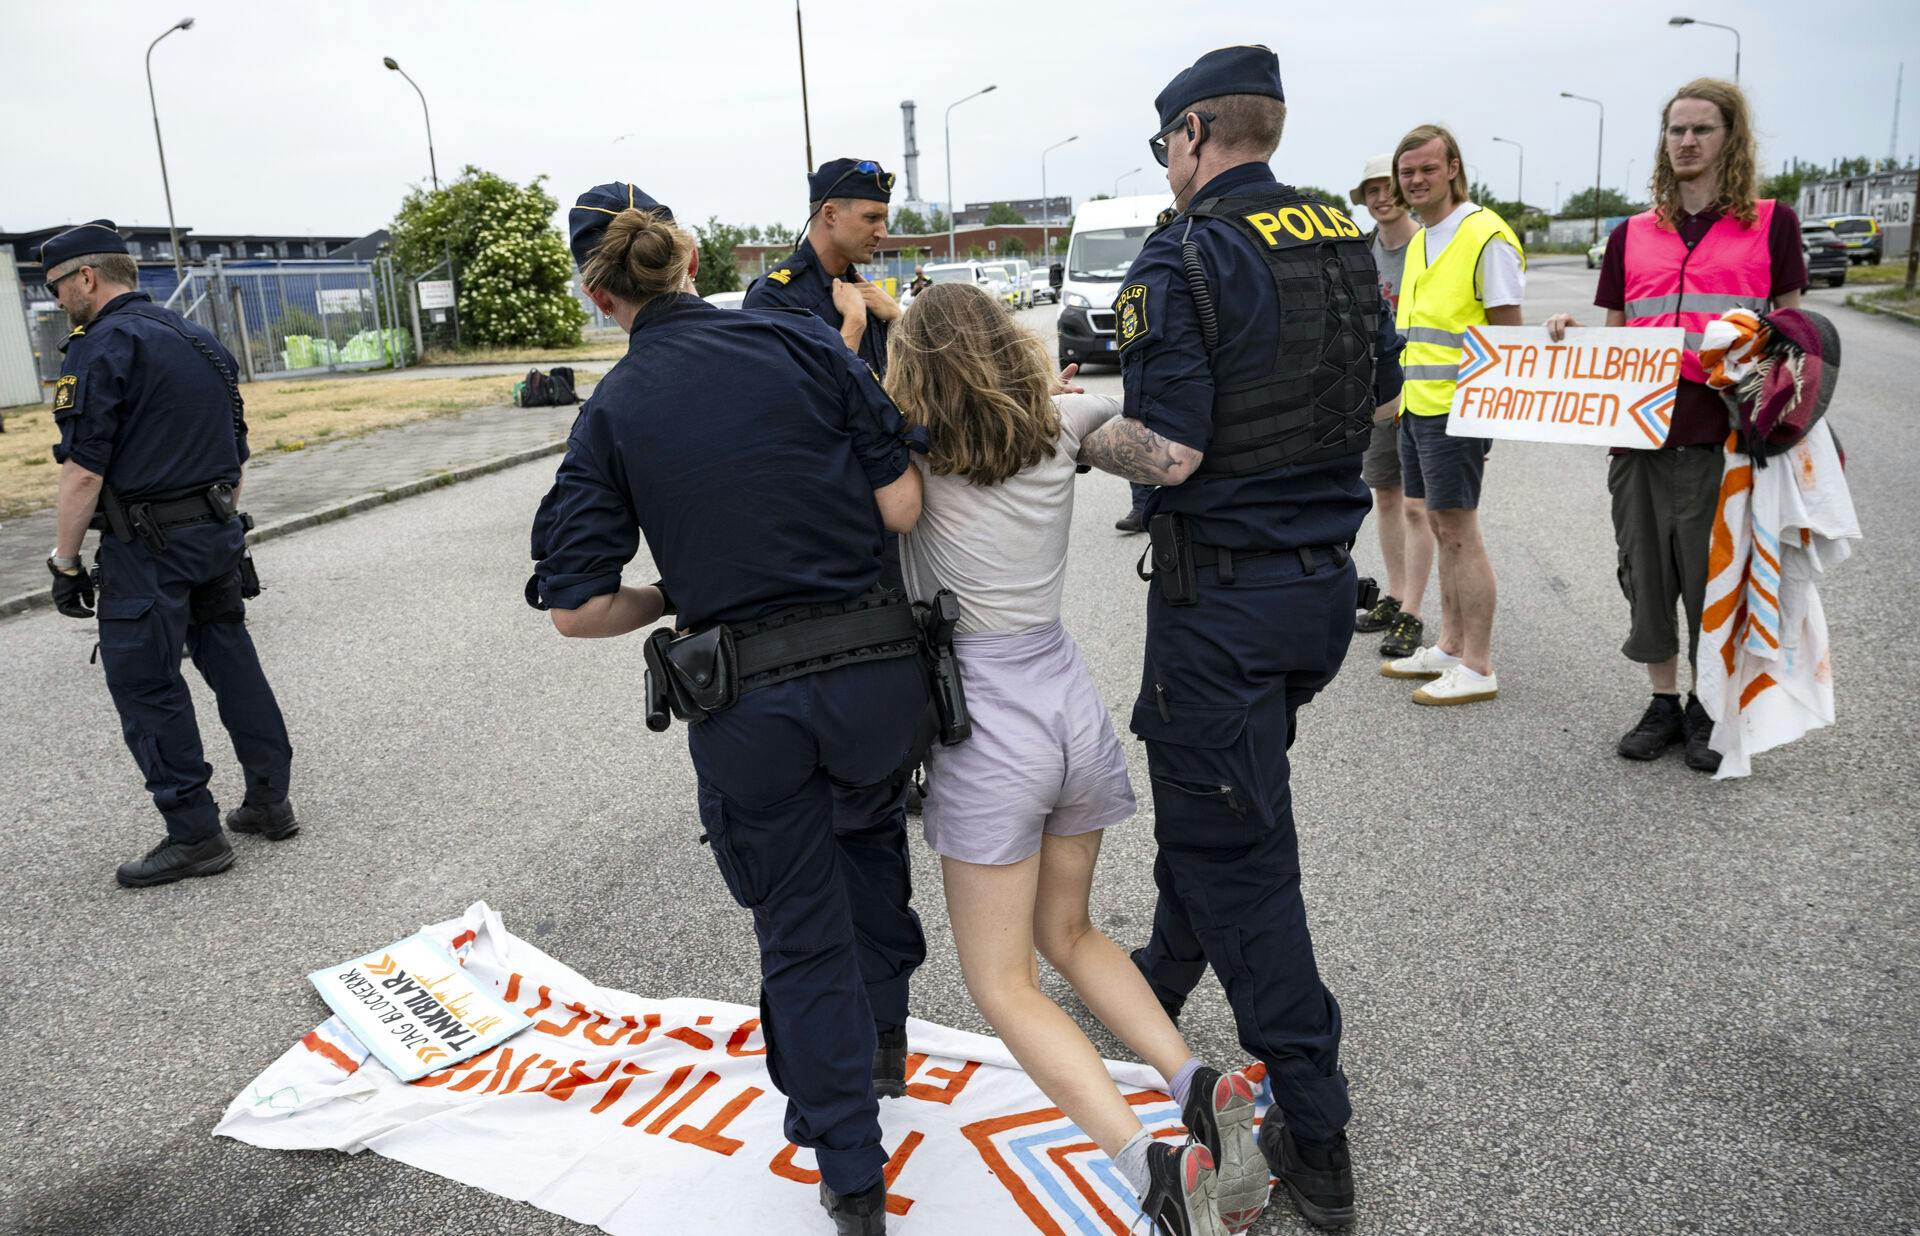 Her slæbes Greta Thunberg væk af politiet. Hendes civile ulydighed har nu kostet den svenske klimaaktivist en bød